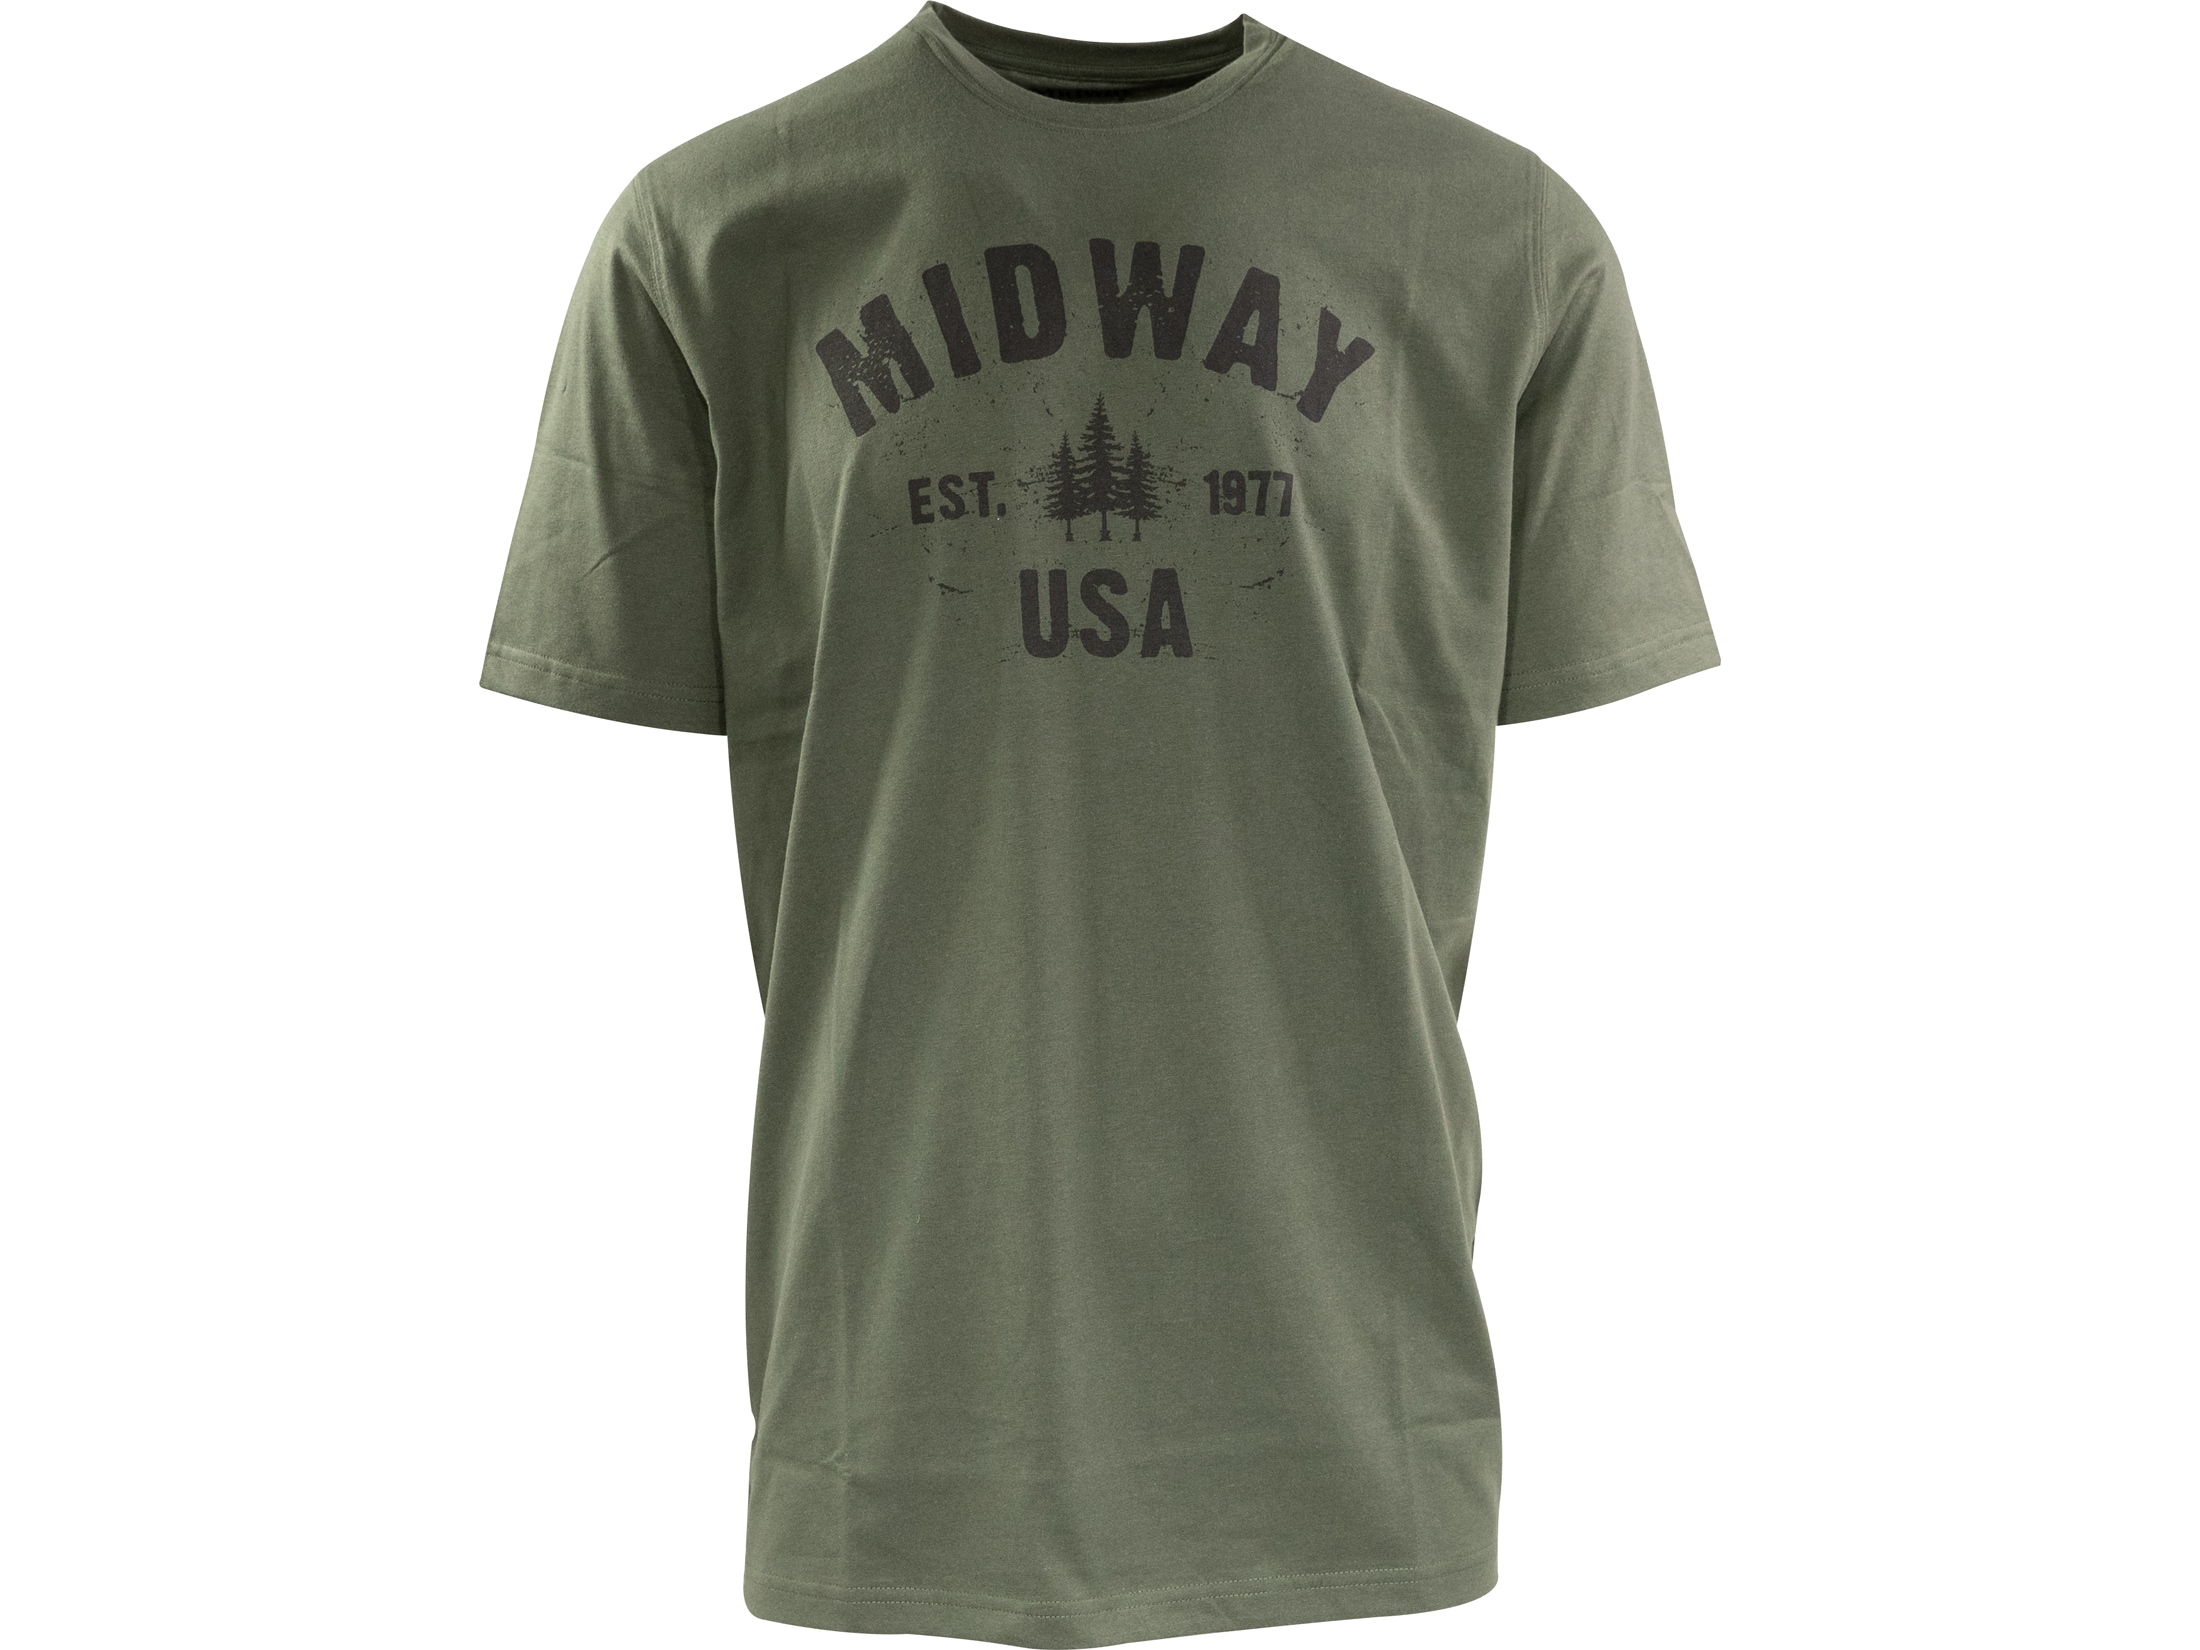 MidwayUSA Men's Short Sleeve T-Shirt Cotton Blend Heather Navy